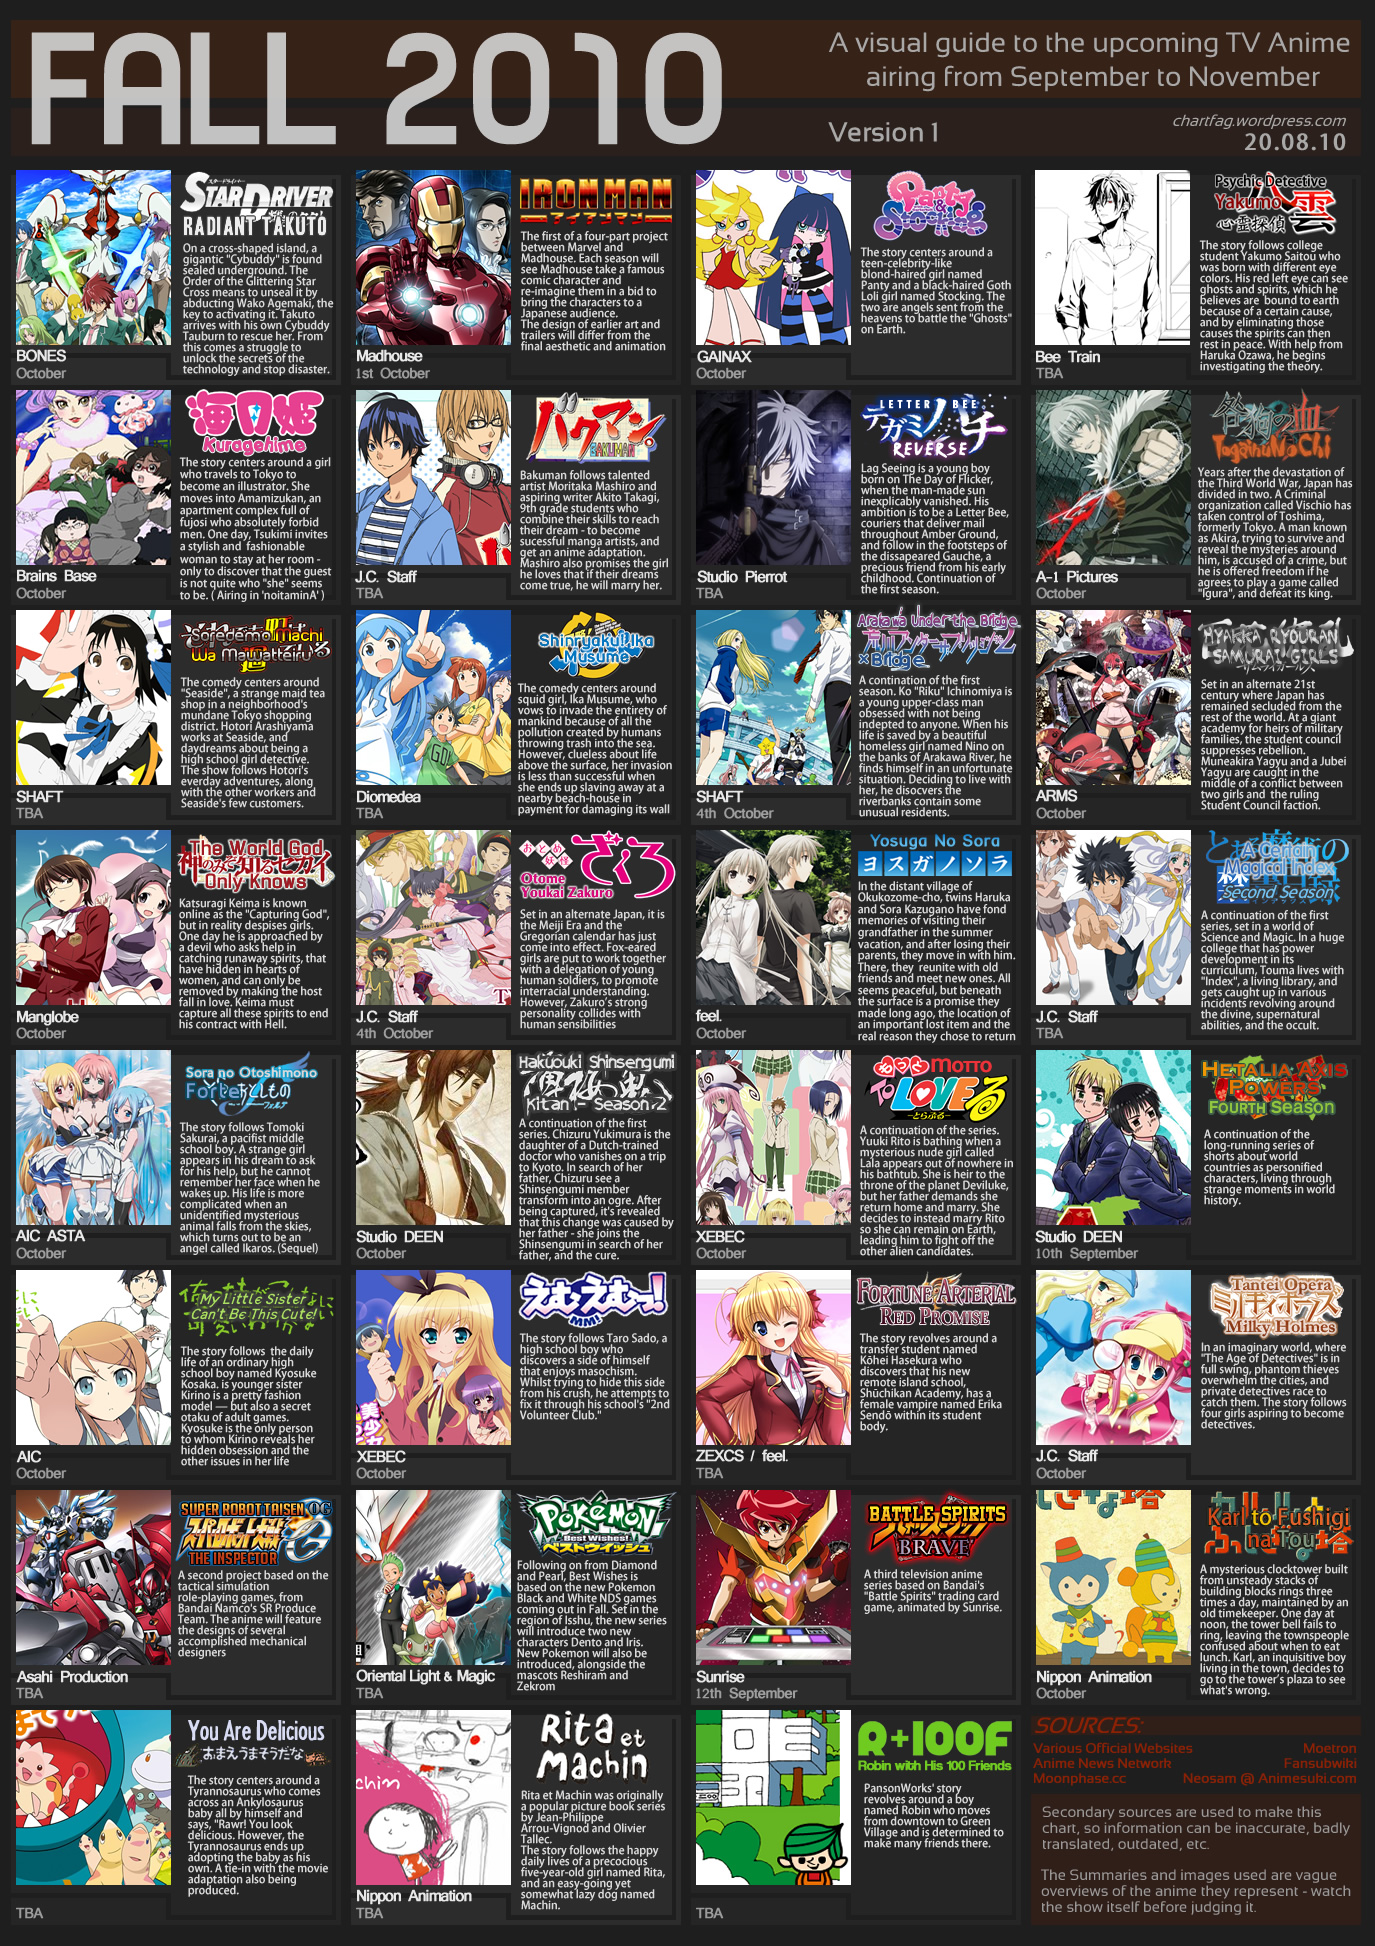 2008 fall anime season write-up